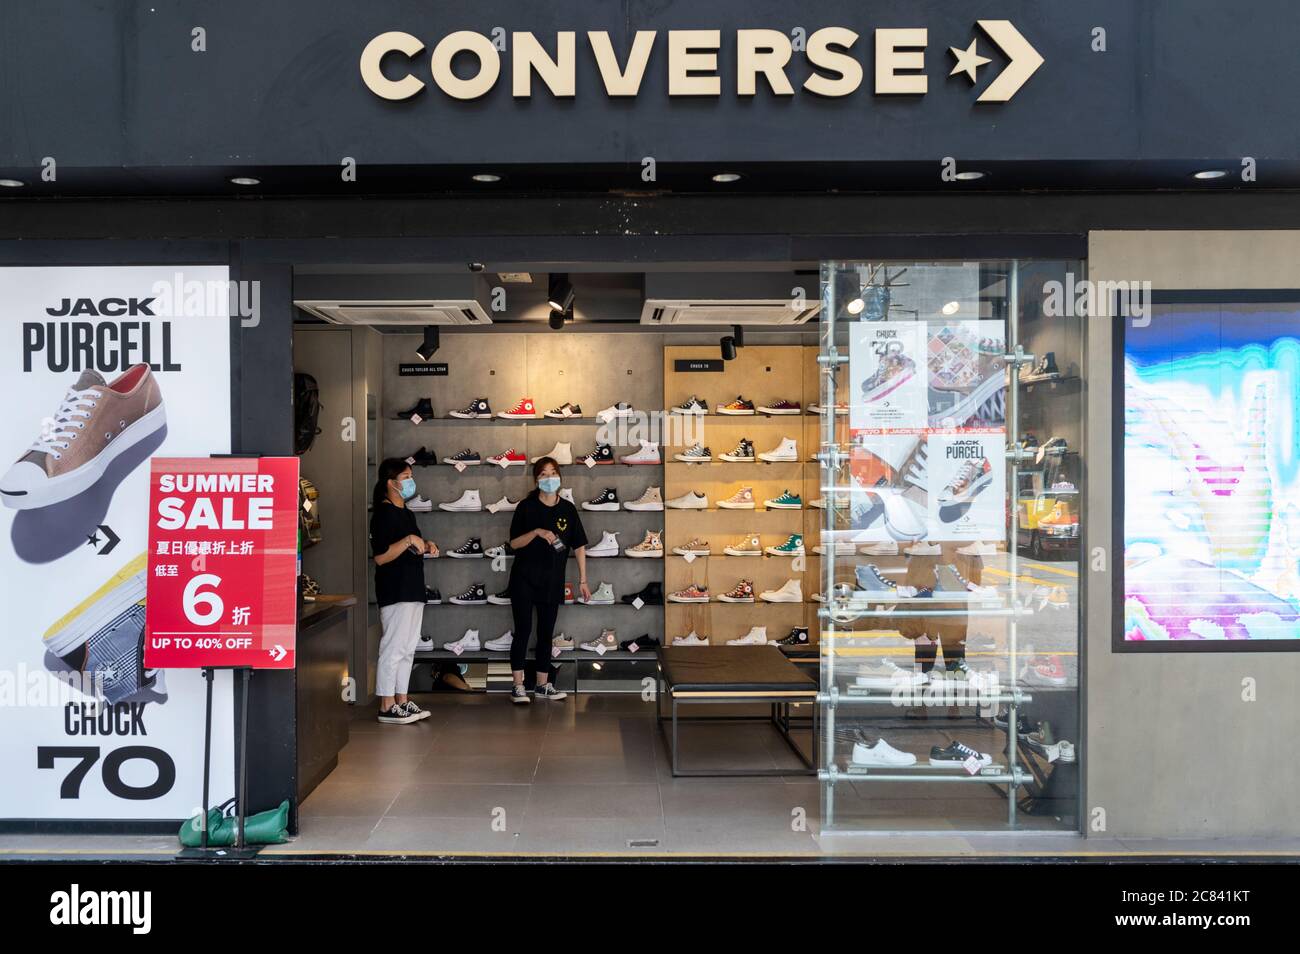 converse shoes hong kong